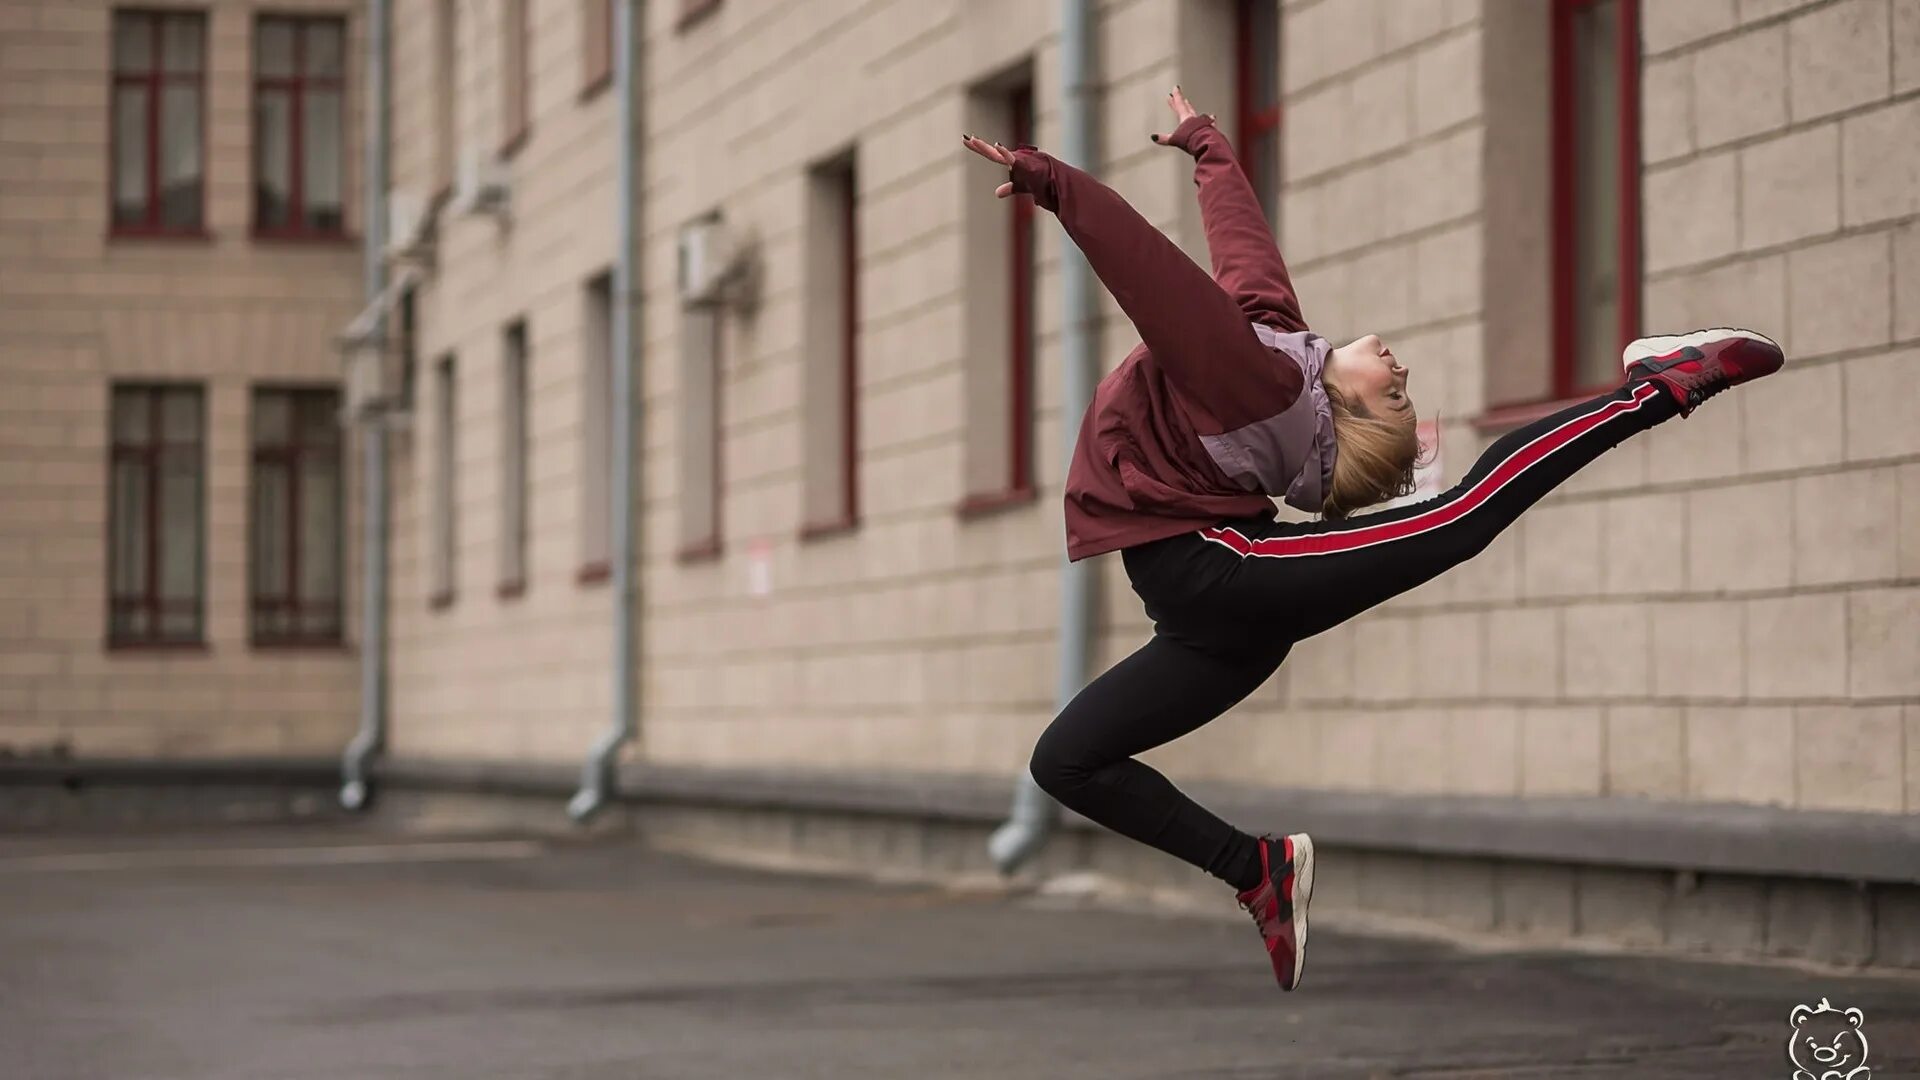 Квадробика бег. Девушка в прыжке. Спортивная девушка прыгает. Девушка в прыжке в спортивной одежде. Квадробика спорт прыжки.